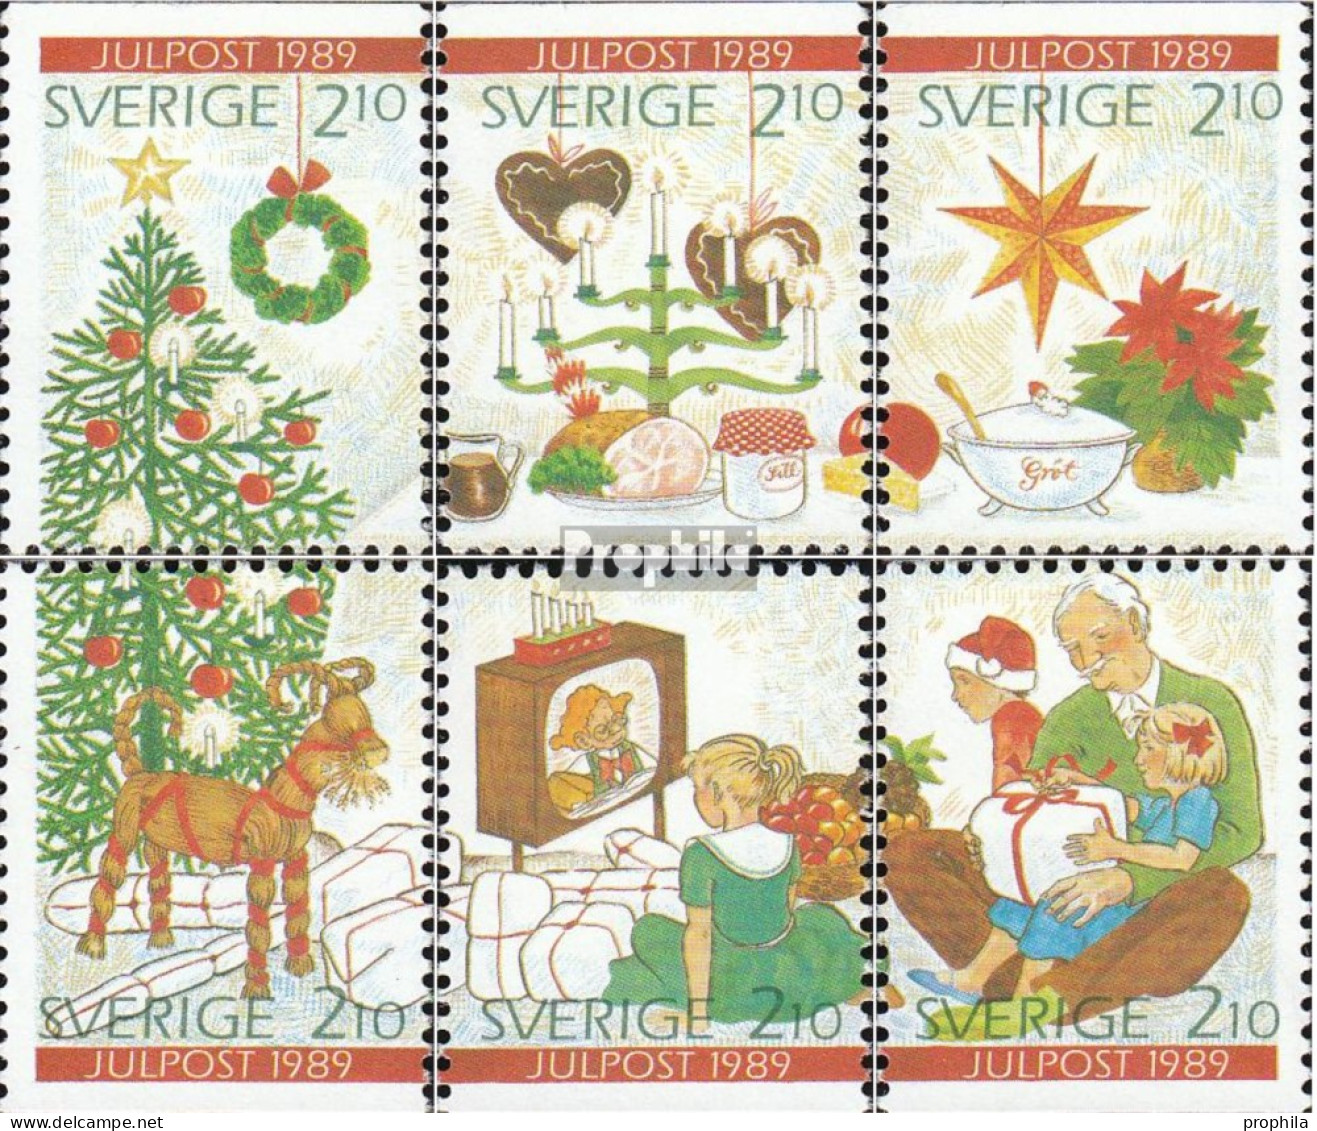 Schweden 1576-1581 (kompl.Ausg.) Postfrisch 1989 Weihnachten - Neufs